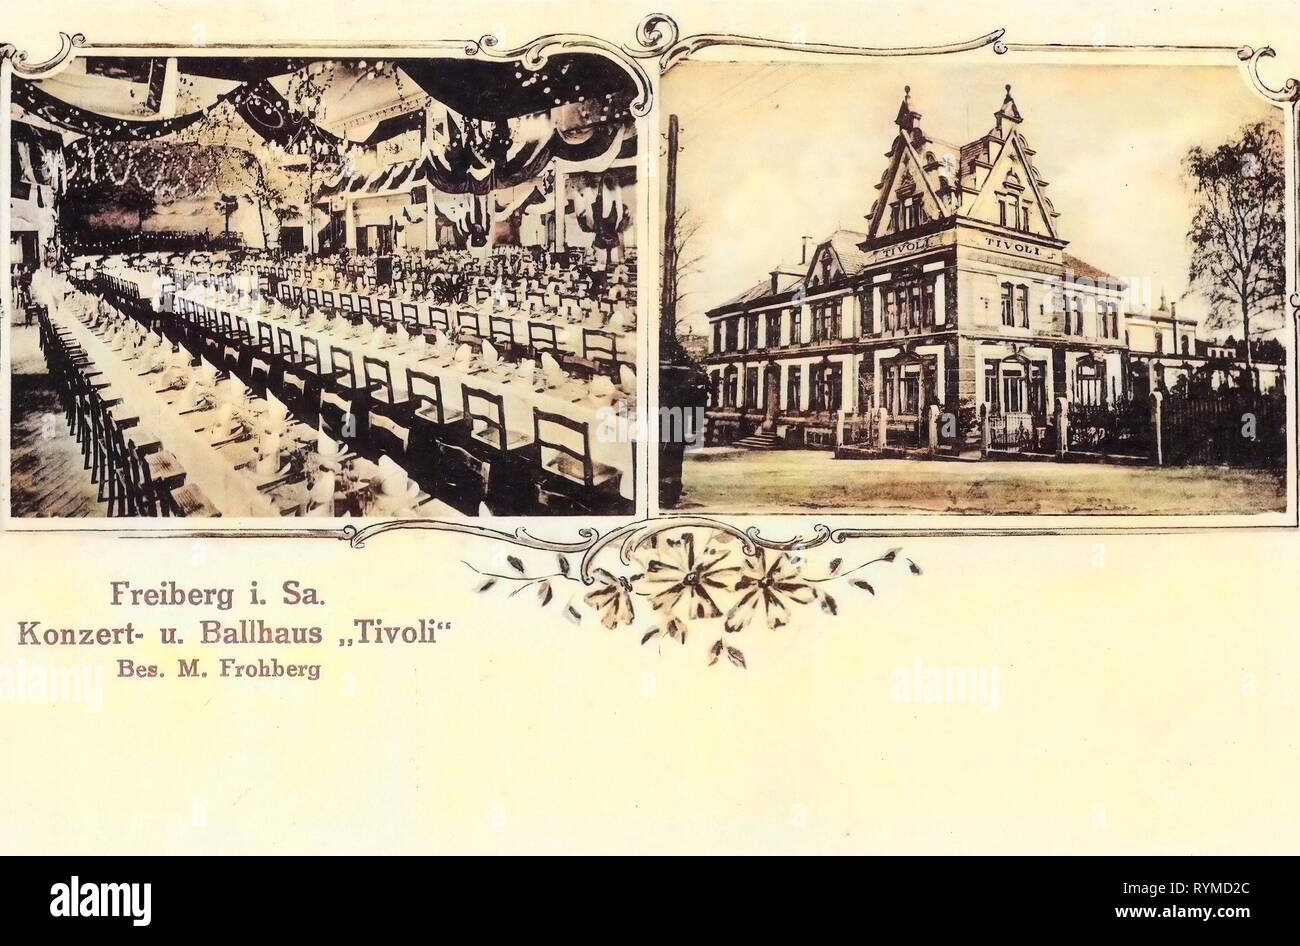 Sale da pranzo in Germania, 1906 Landkreis Mittelsachsen, Freiberg, Concerto, und Ballhaus Tivoli Innen und Außenansicht Foto Stock